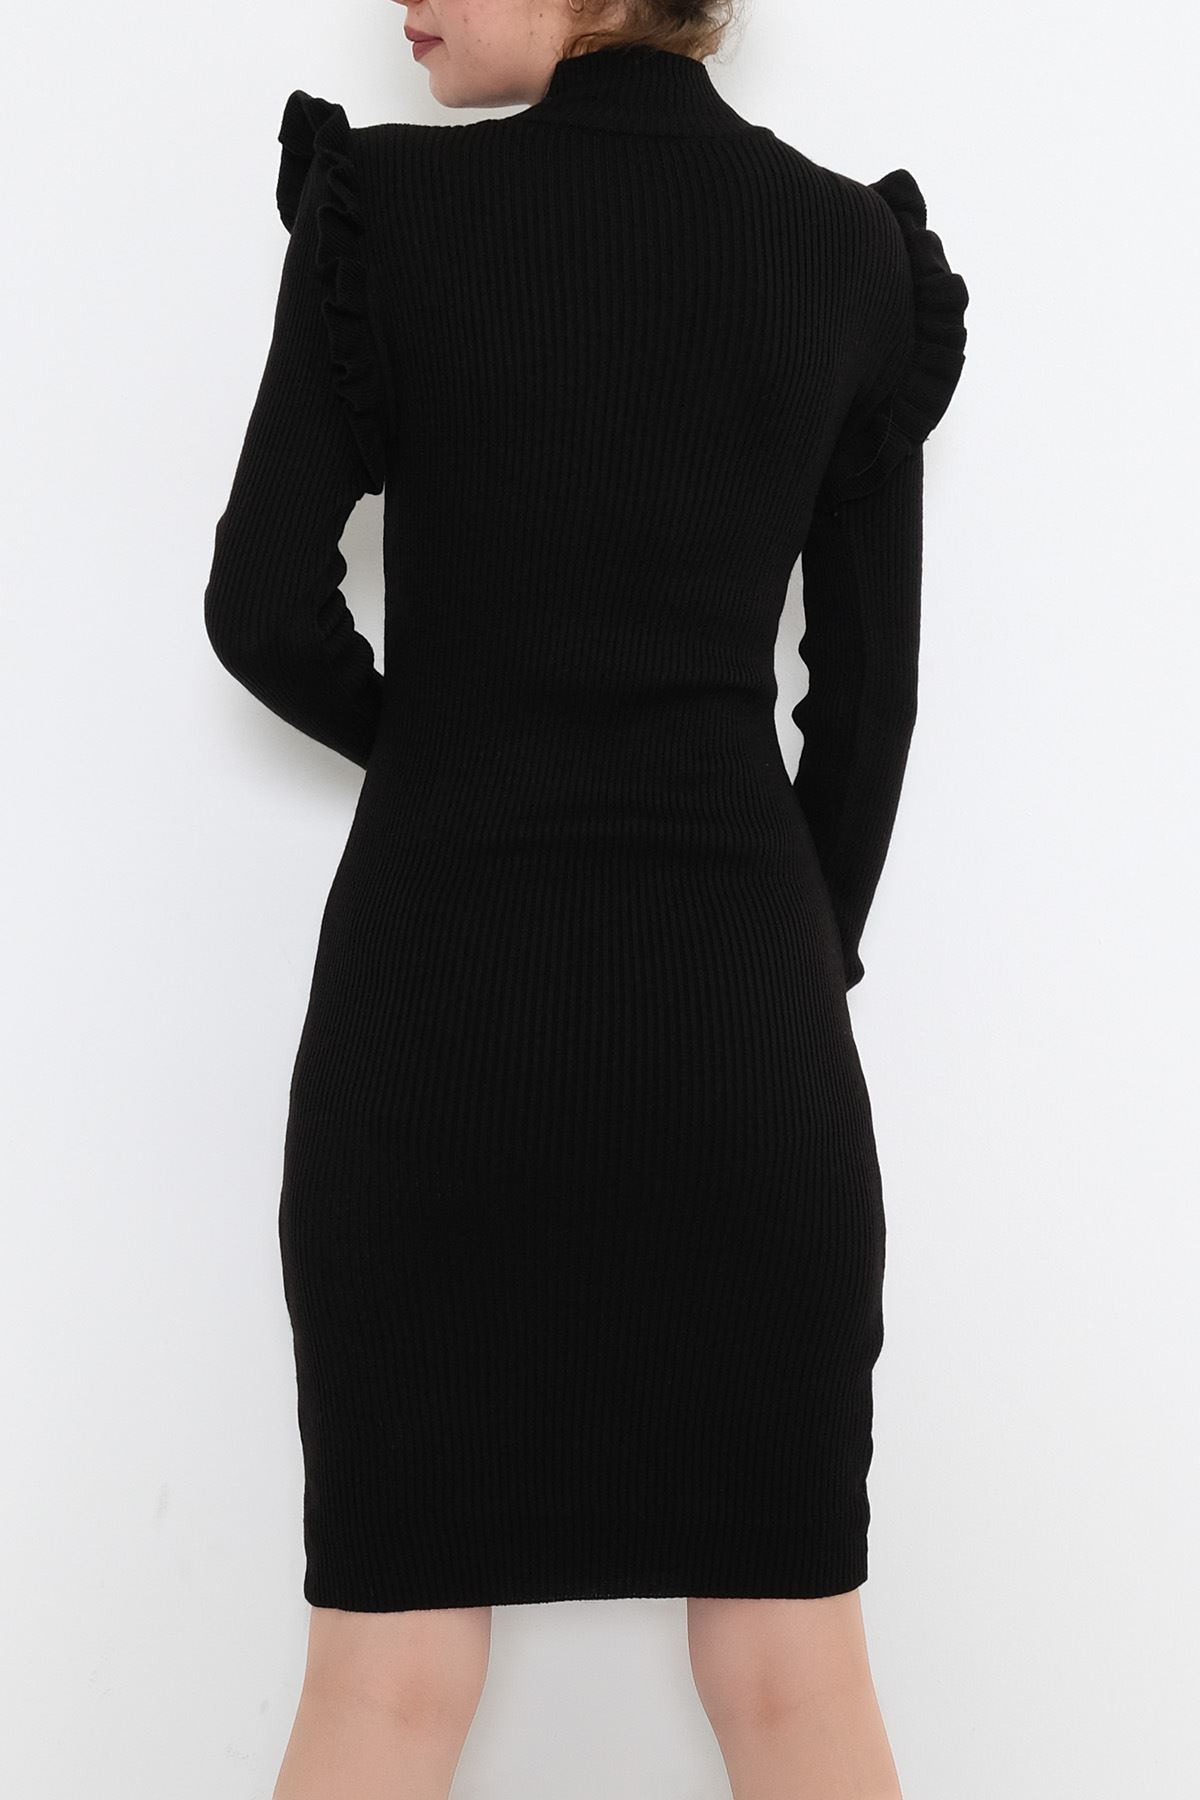 Yaka Kol Düğme Detaylı Elbise Siyah - 10000.1612.